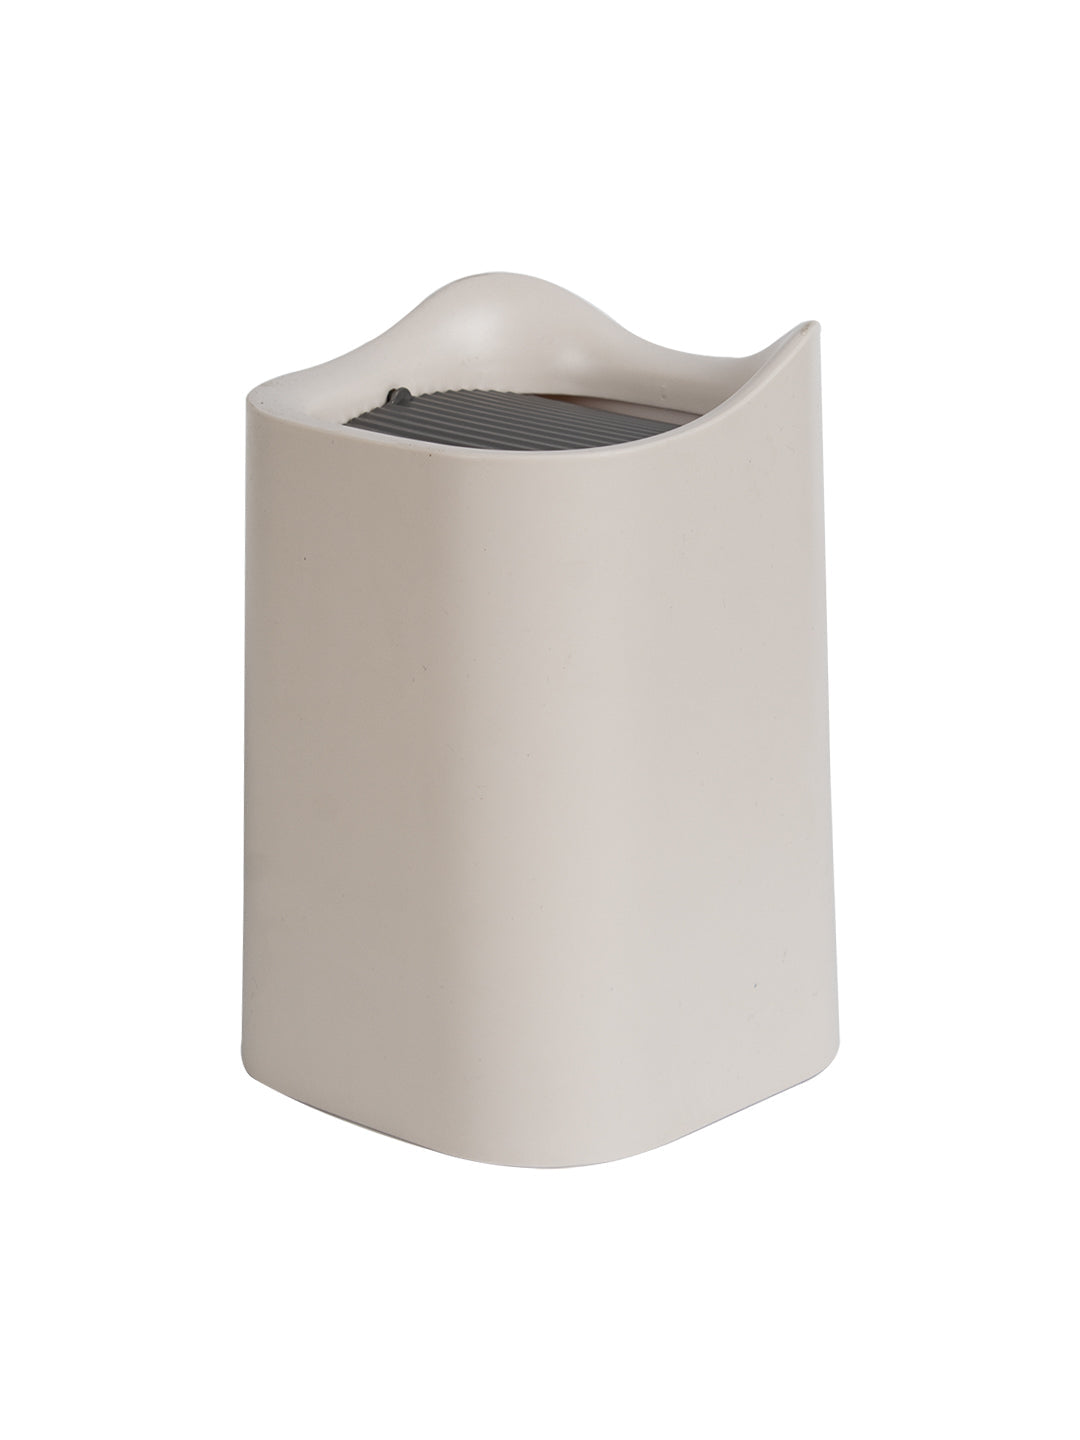 VON CASA Modern Table Dustbin - 1500ml, Cream Grey